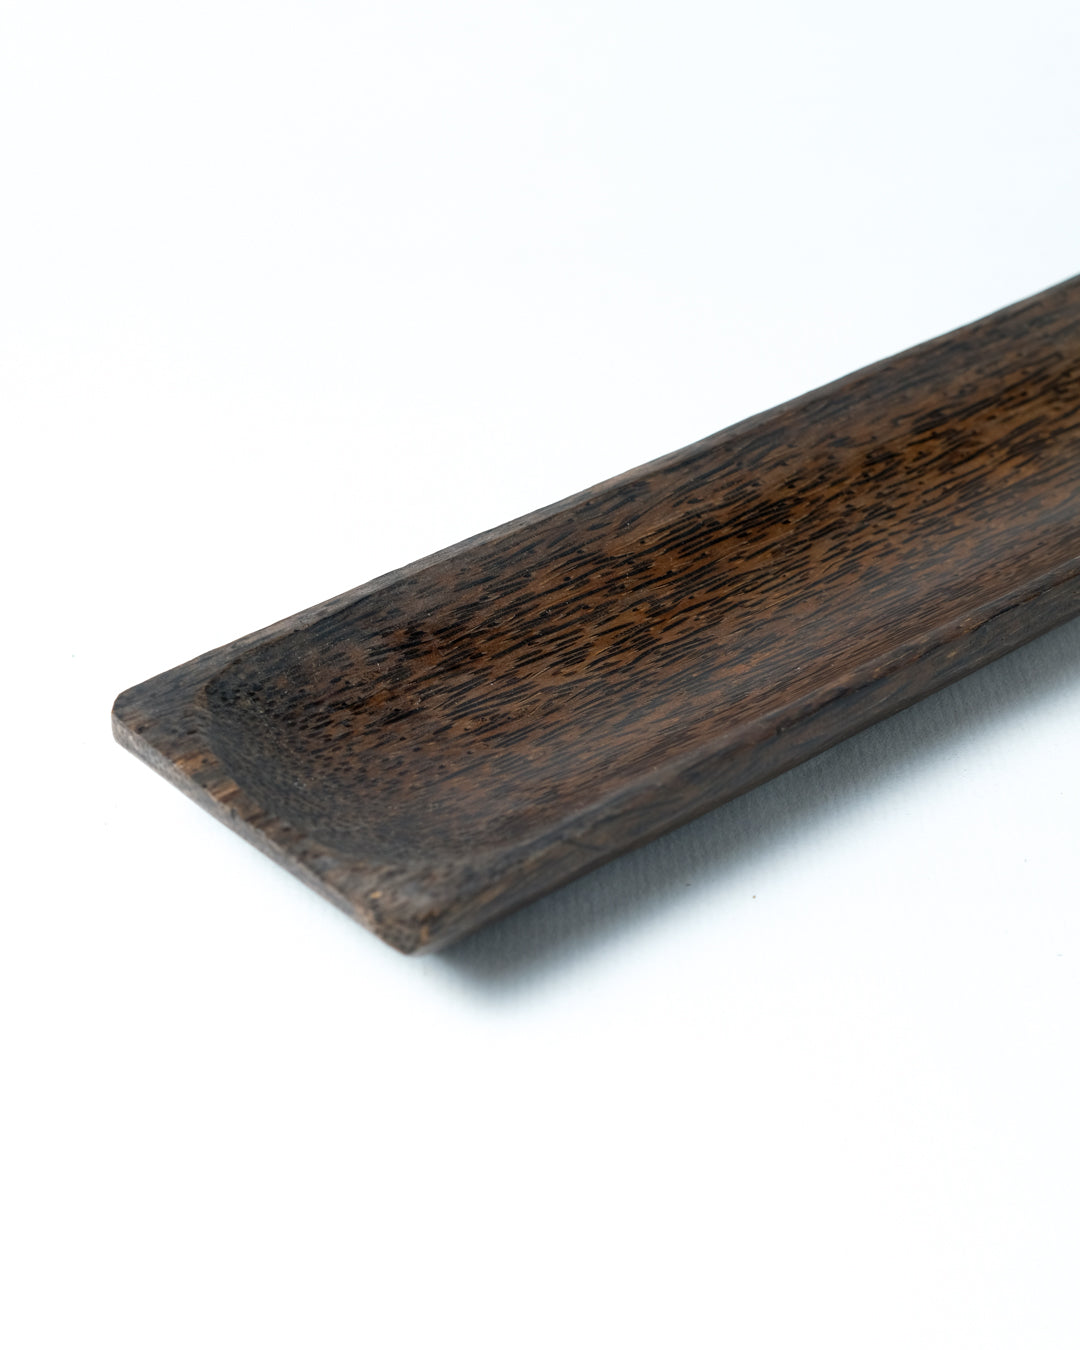 Plato para servir de madera de palmera Teratai, altura 2,5 cm largo 40 cm profundidad 9 cm